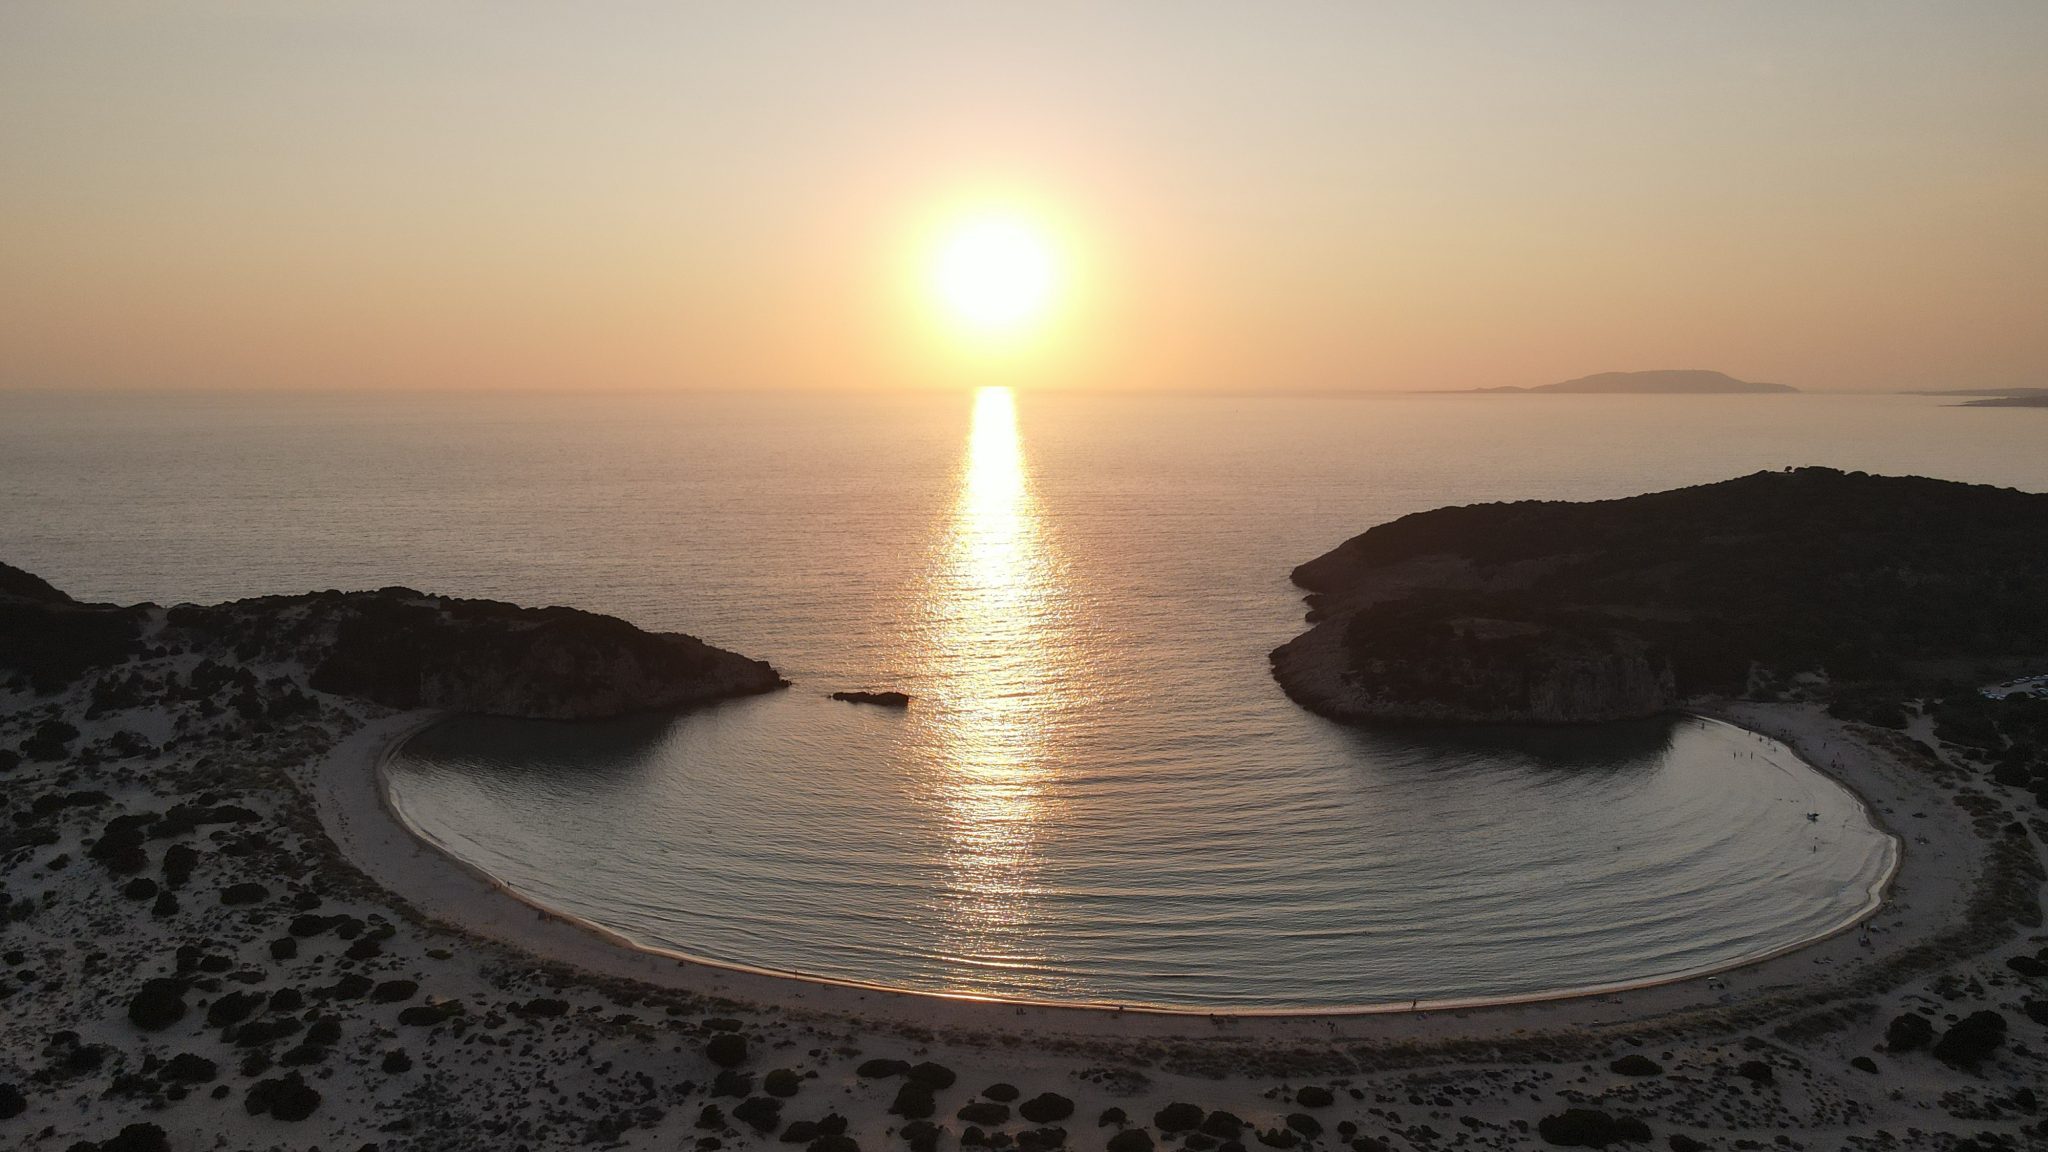 Voidokoilia beach reason to visit Messinia Greece luxuryholidays.gr